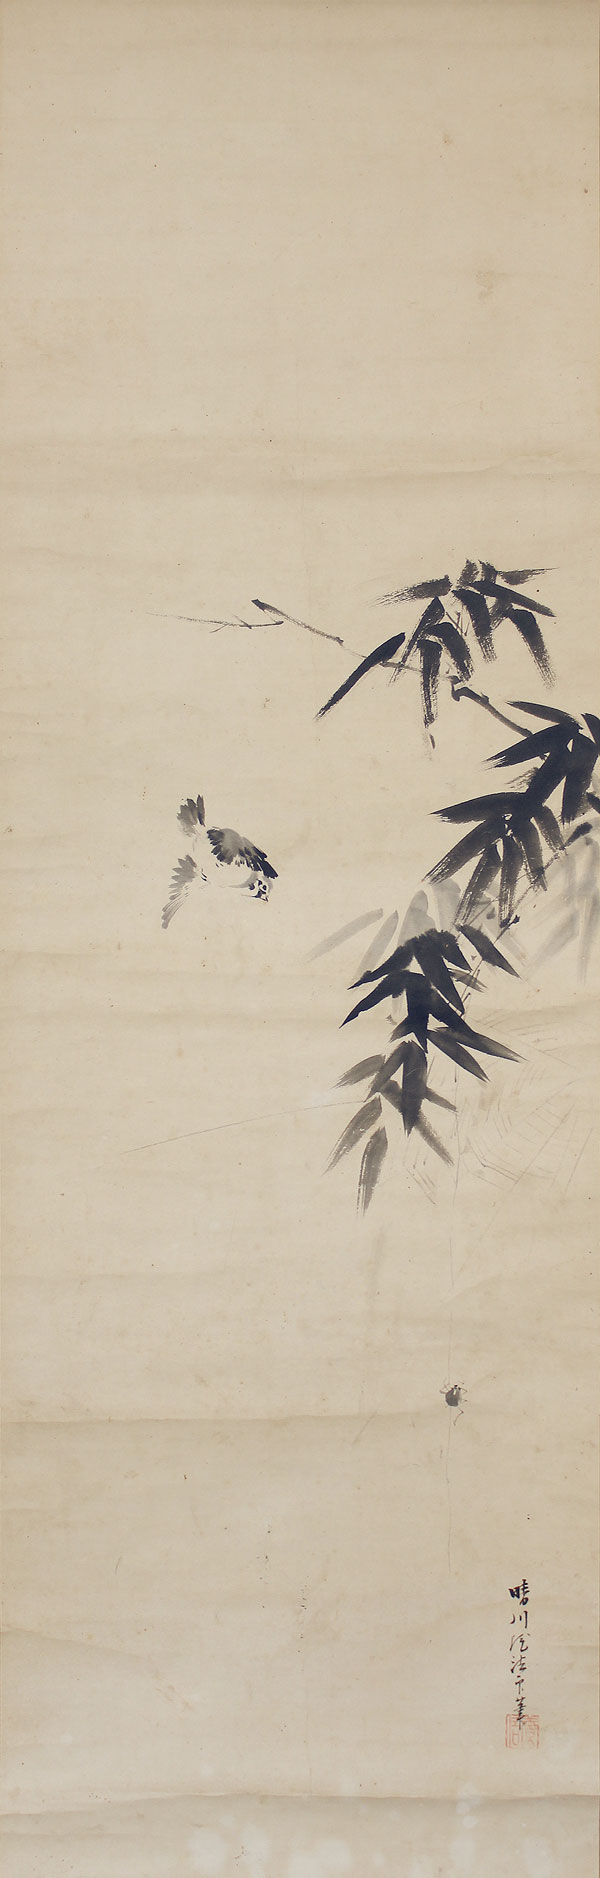 Kano-Osanobu-Bildrolle-antik-Japan-KAK151B